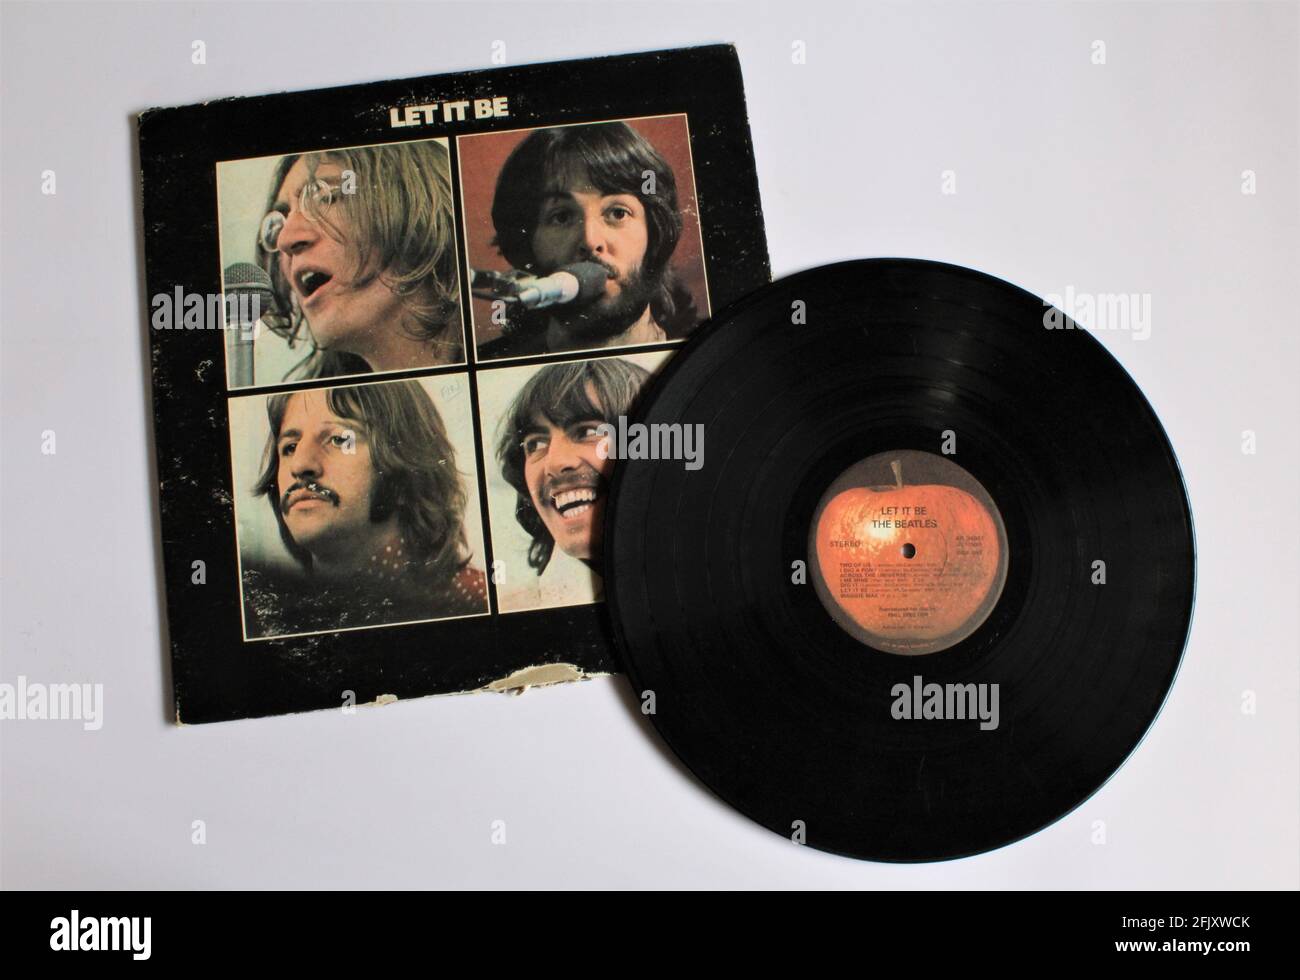 Laissez-le être est un disque du groupe de rock anglais The Beatles. Cet album de musique se trouve sur un disque LP en vinyle. Musique pop psychédélique. Banque D'Images